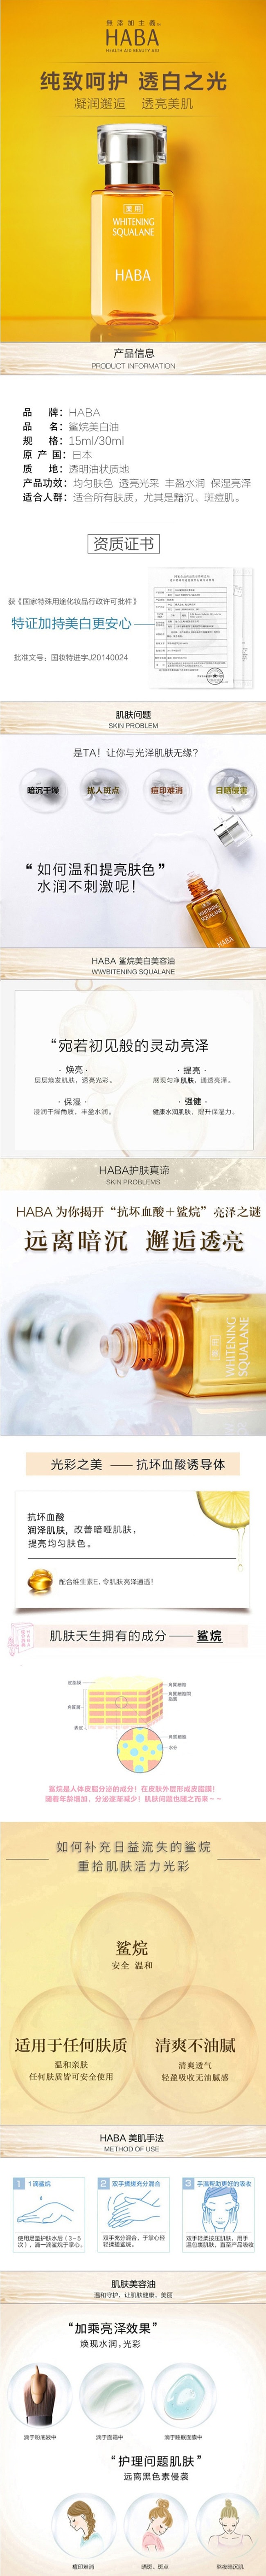 【日本直效郵件】HABA 鯊烷美白黃油美容油30ml